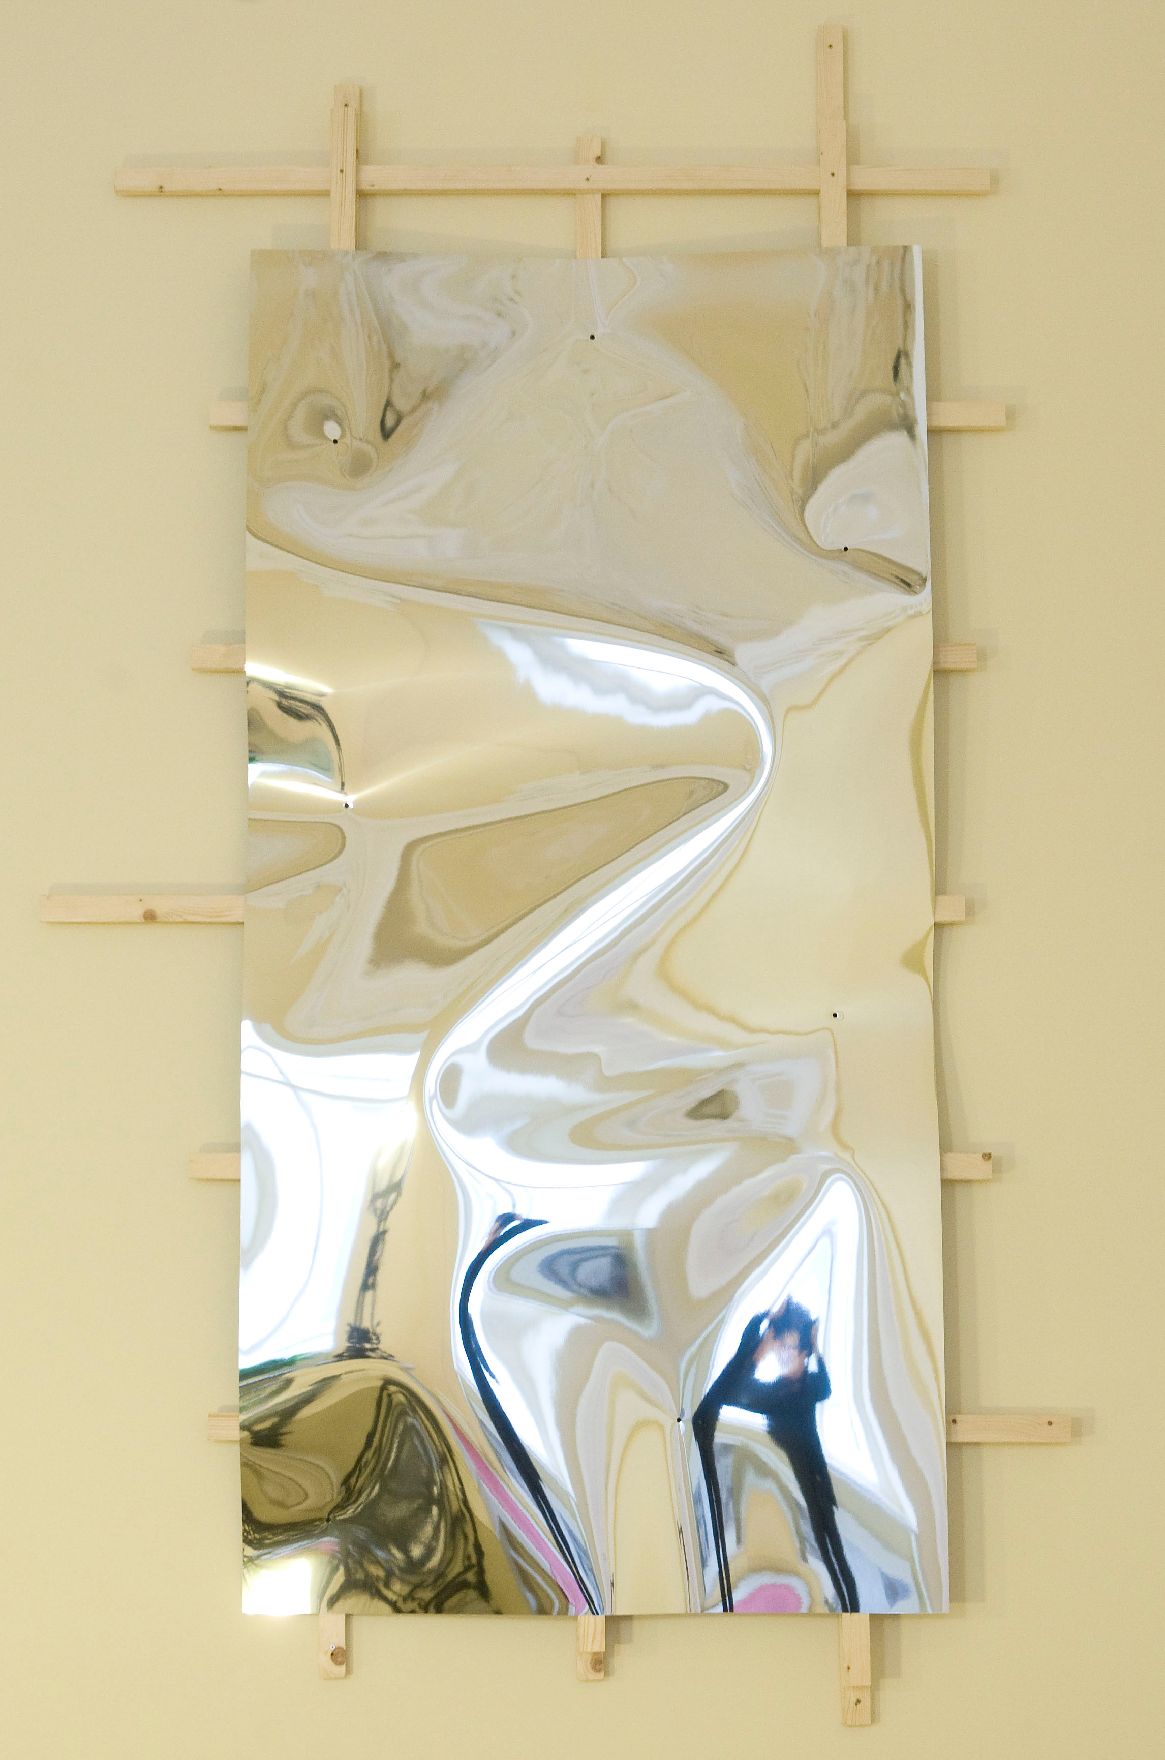 Das Werk "Wiener Wandstück" von Gerold Tagwerker ausgestellt auf der Feststiege im Bundeskanzleramt im Jahr 2009.